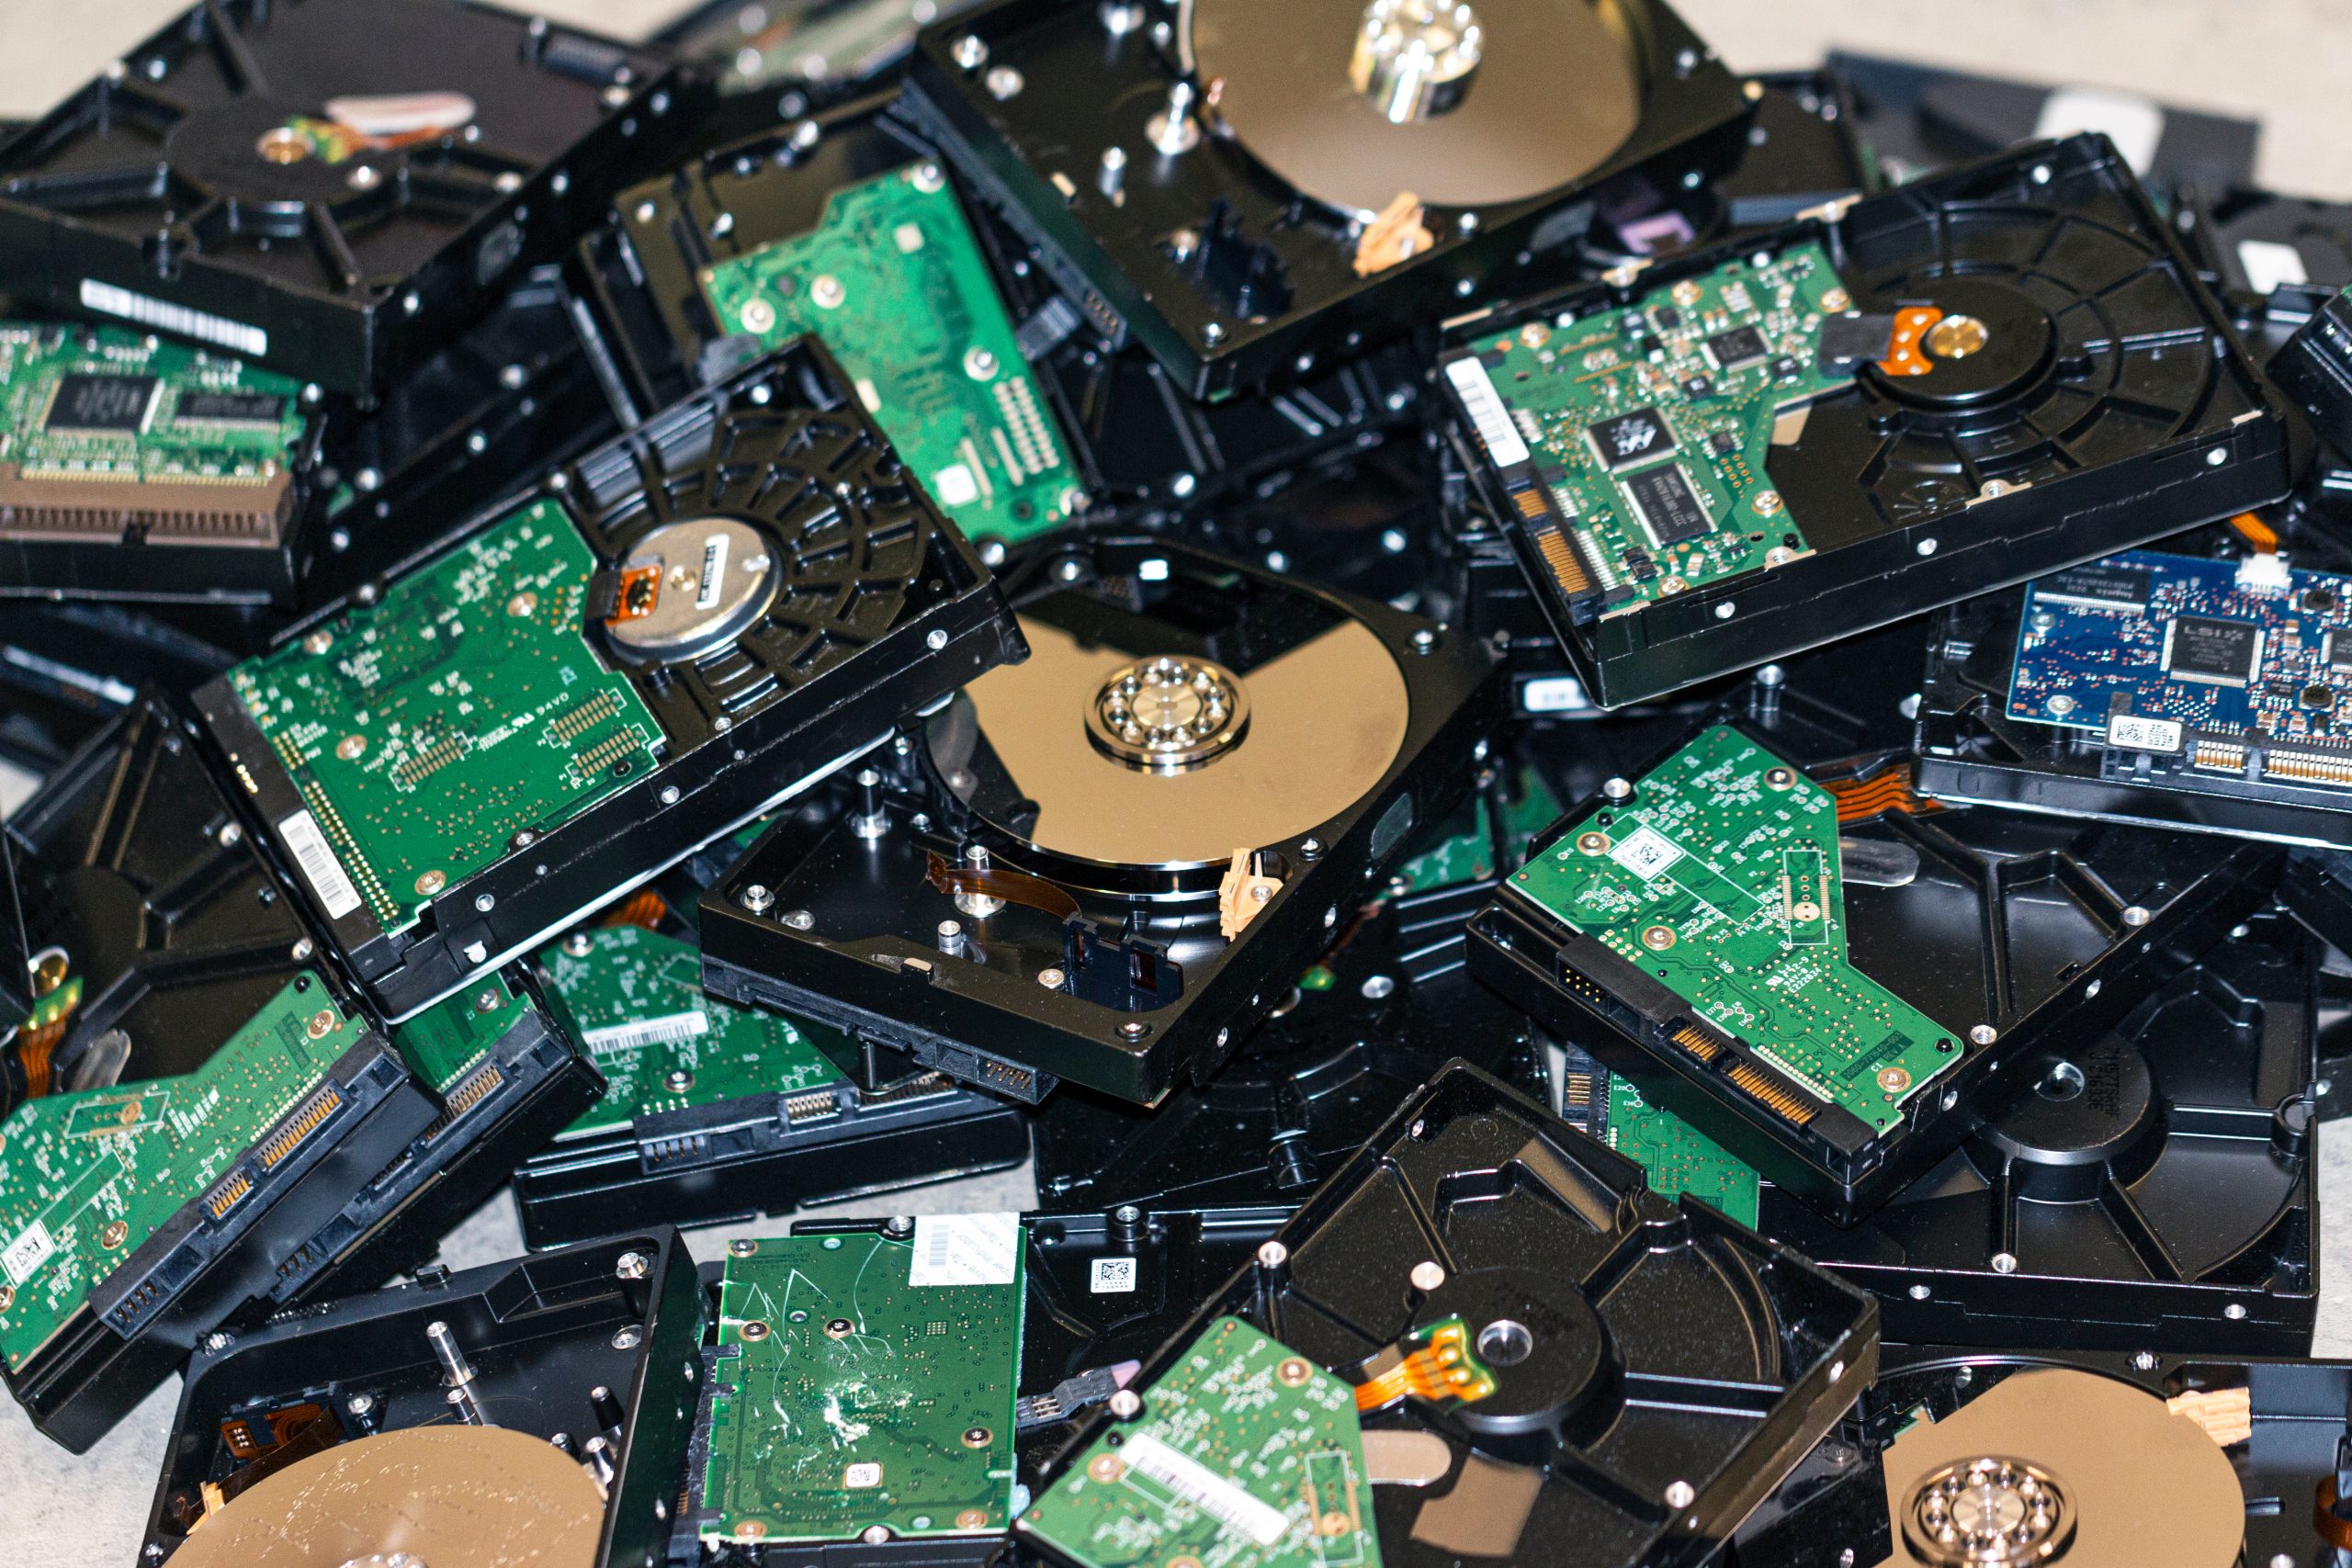 A heap of hard drives